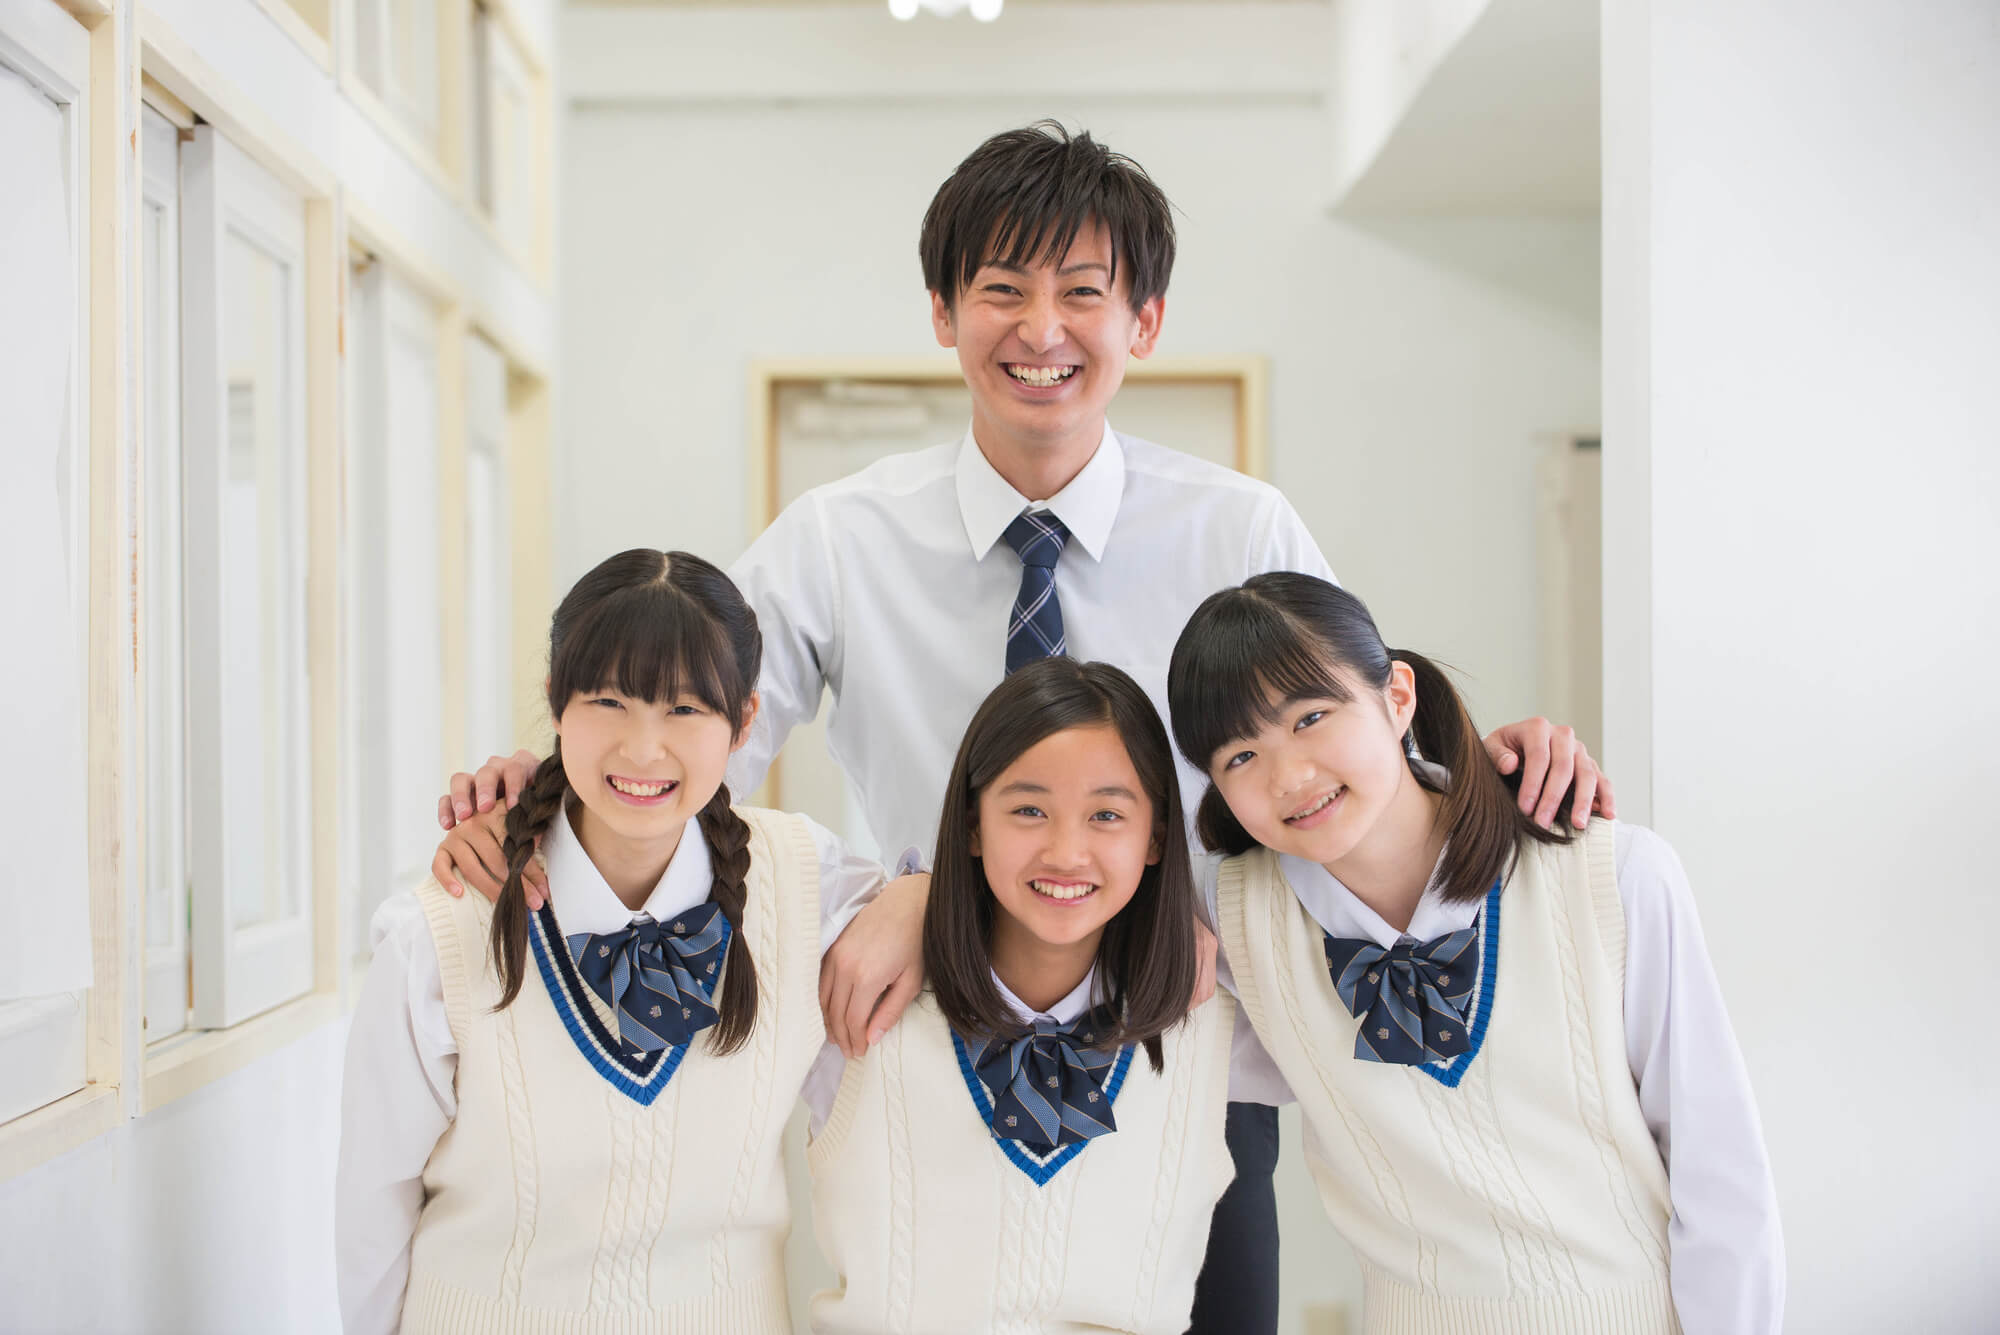 関西 大学 第 一 中学校 偏差 値